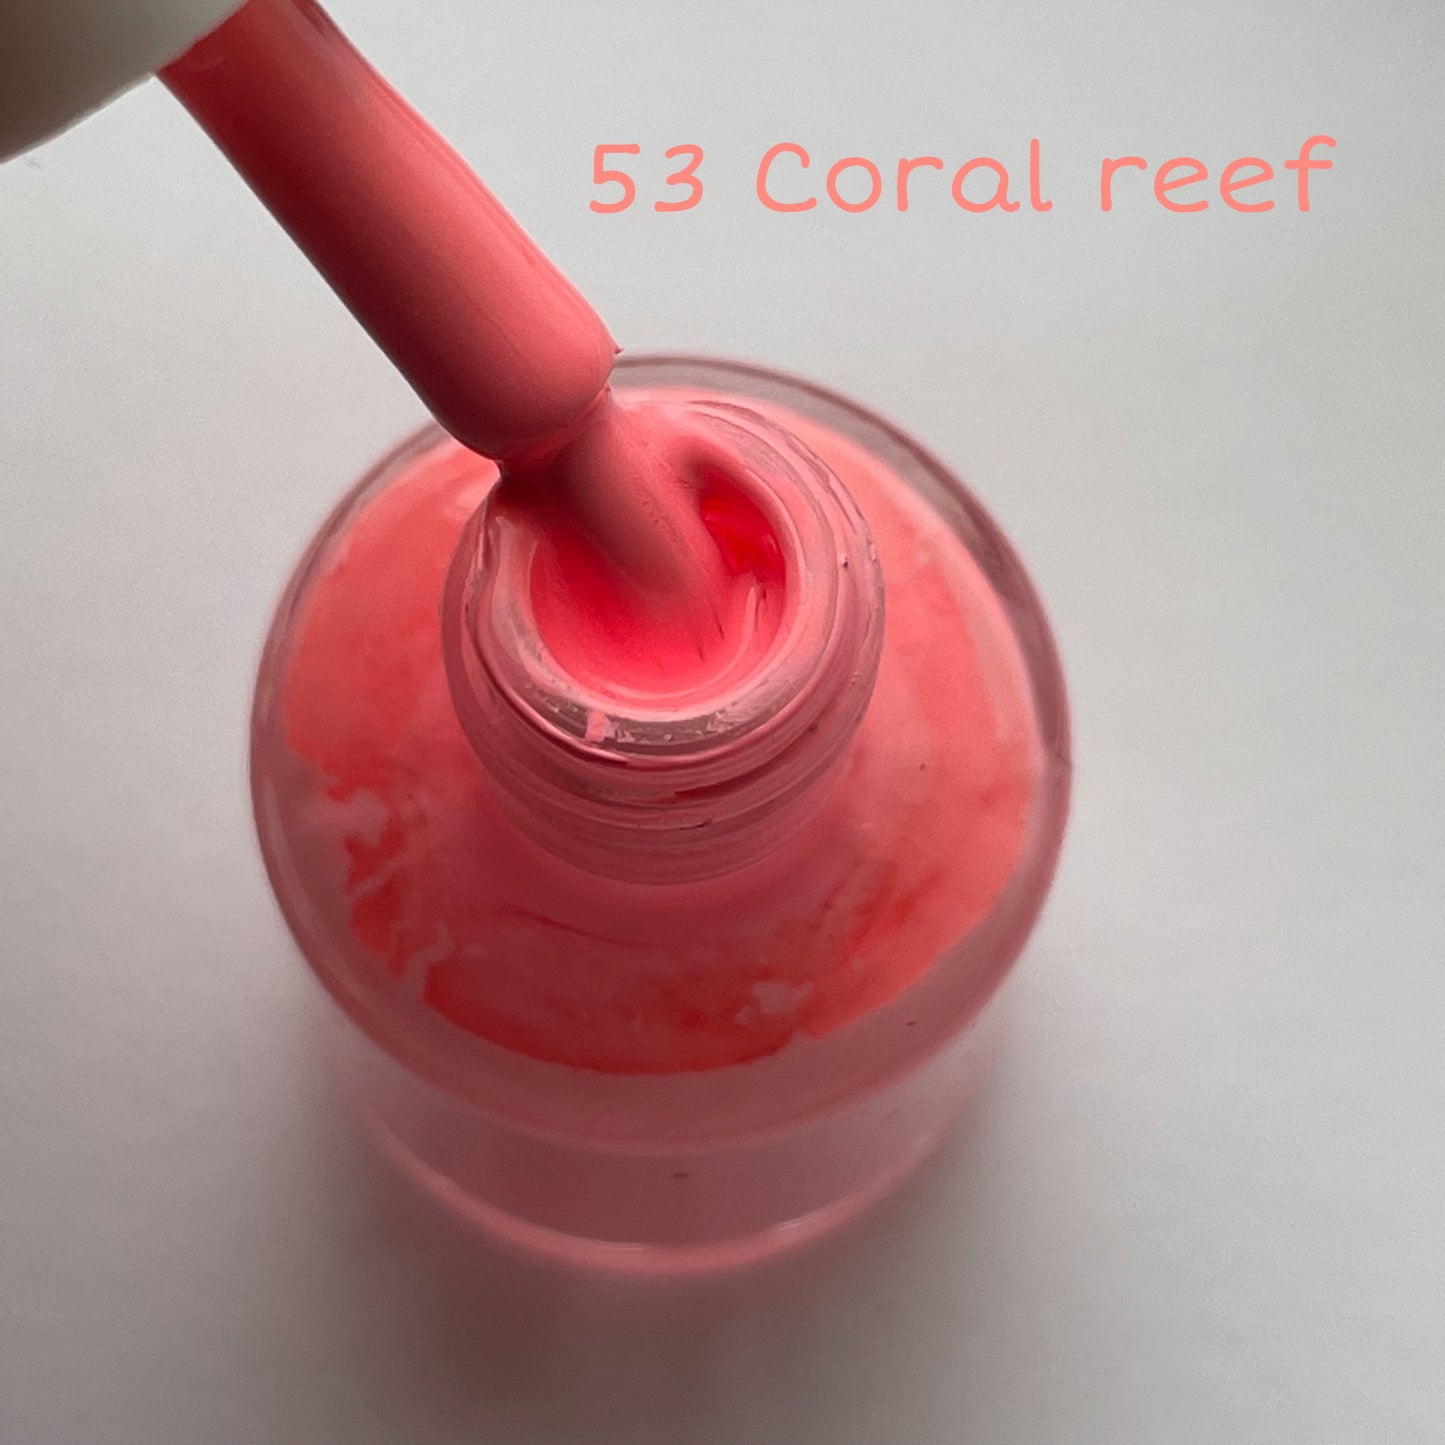 53 Coral Reef